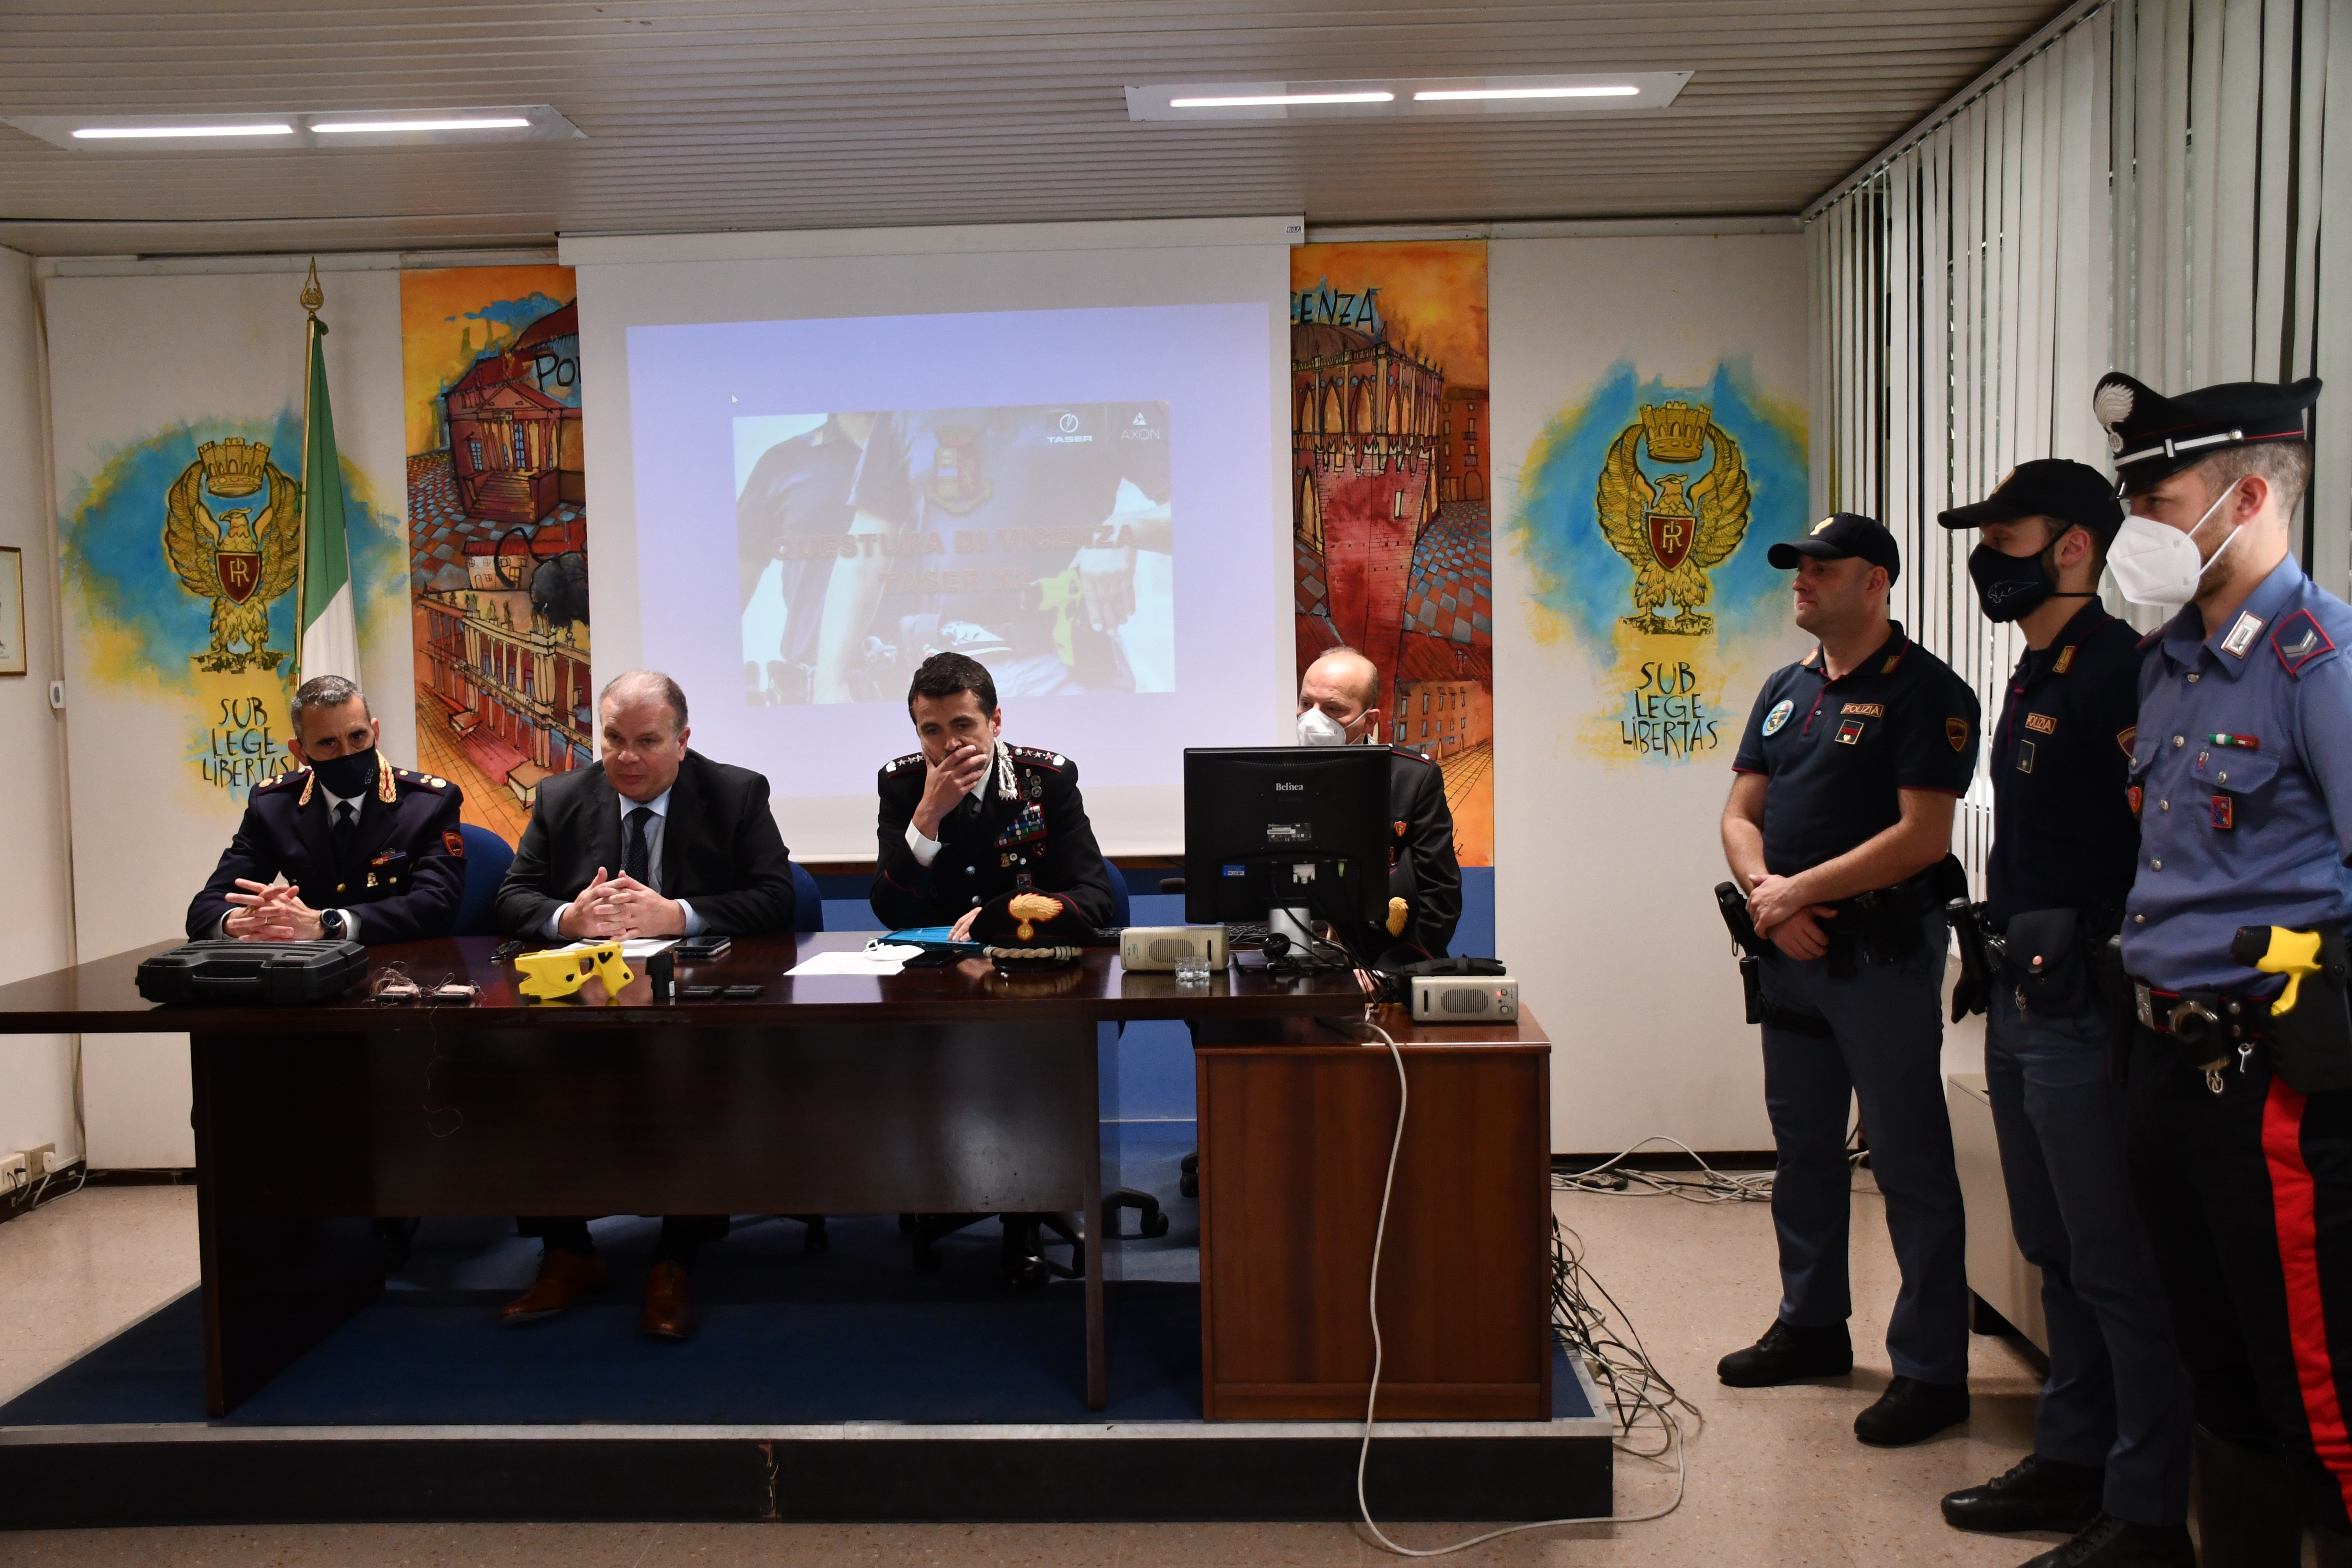 CONFERENZA STAMPA del 23 Maggio 2022 - Vicenza “TASER” a Polizia e Carabinieri